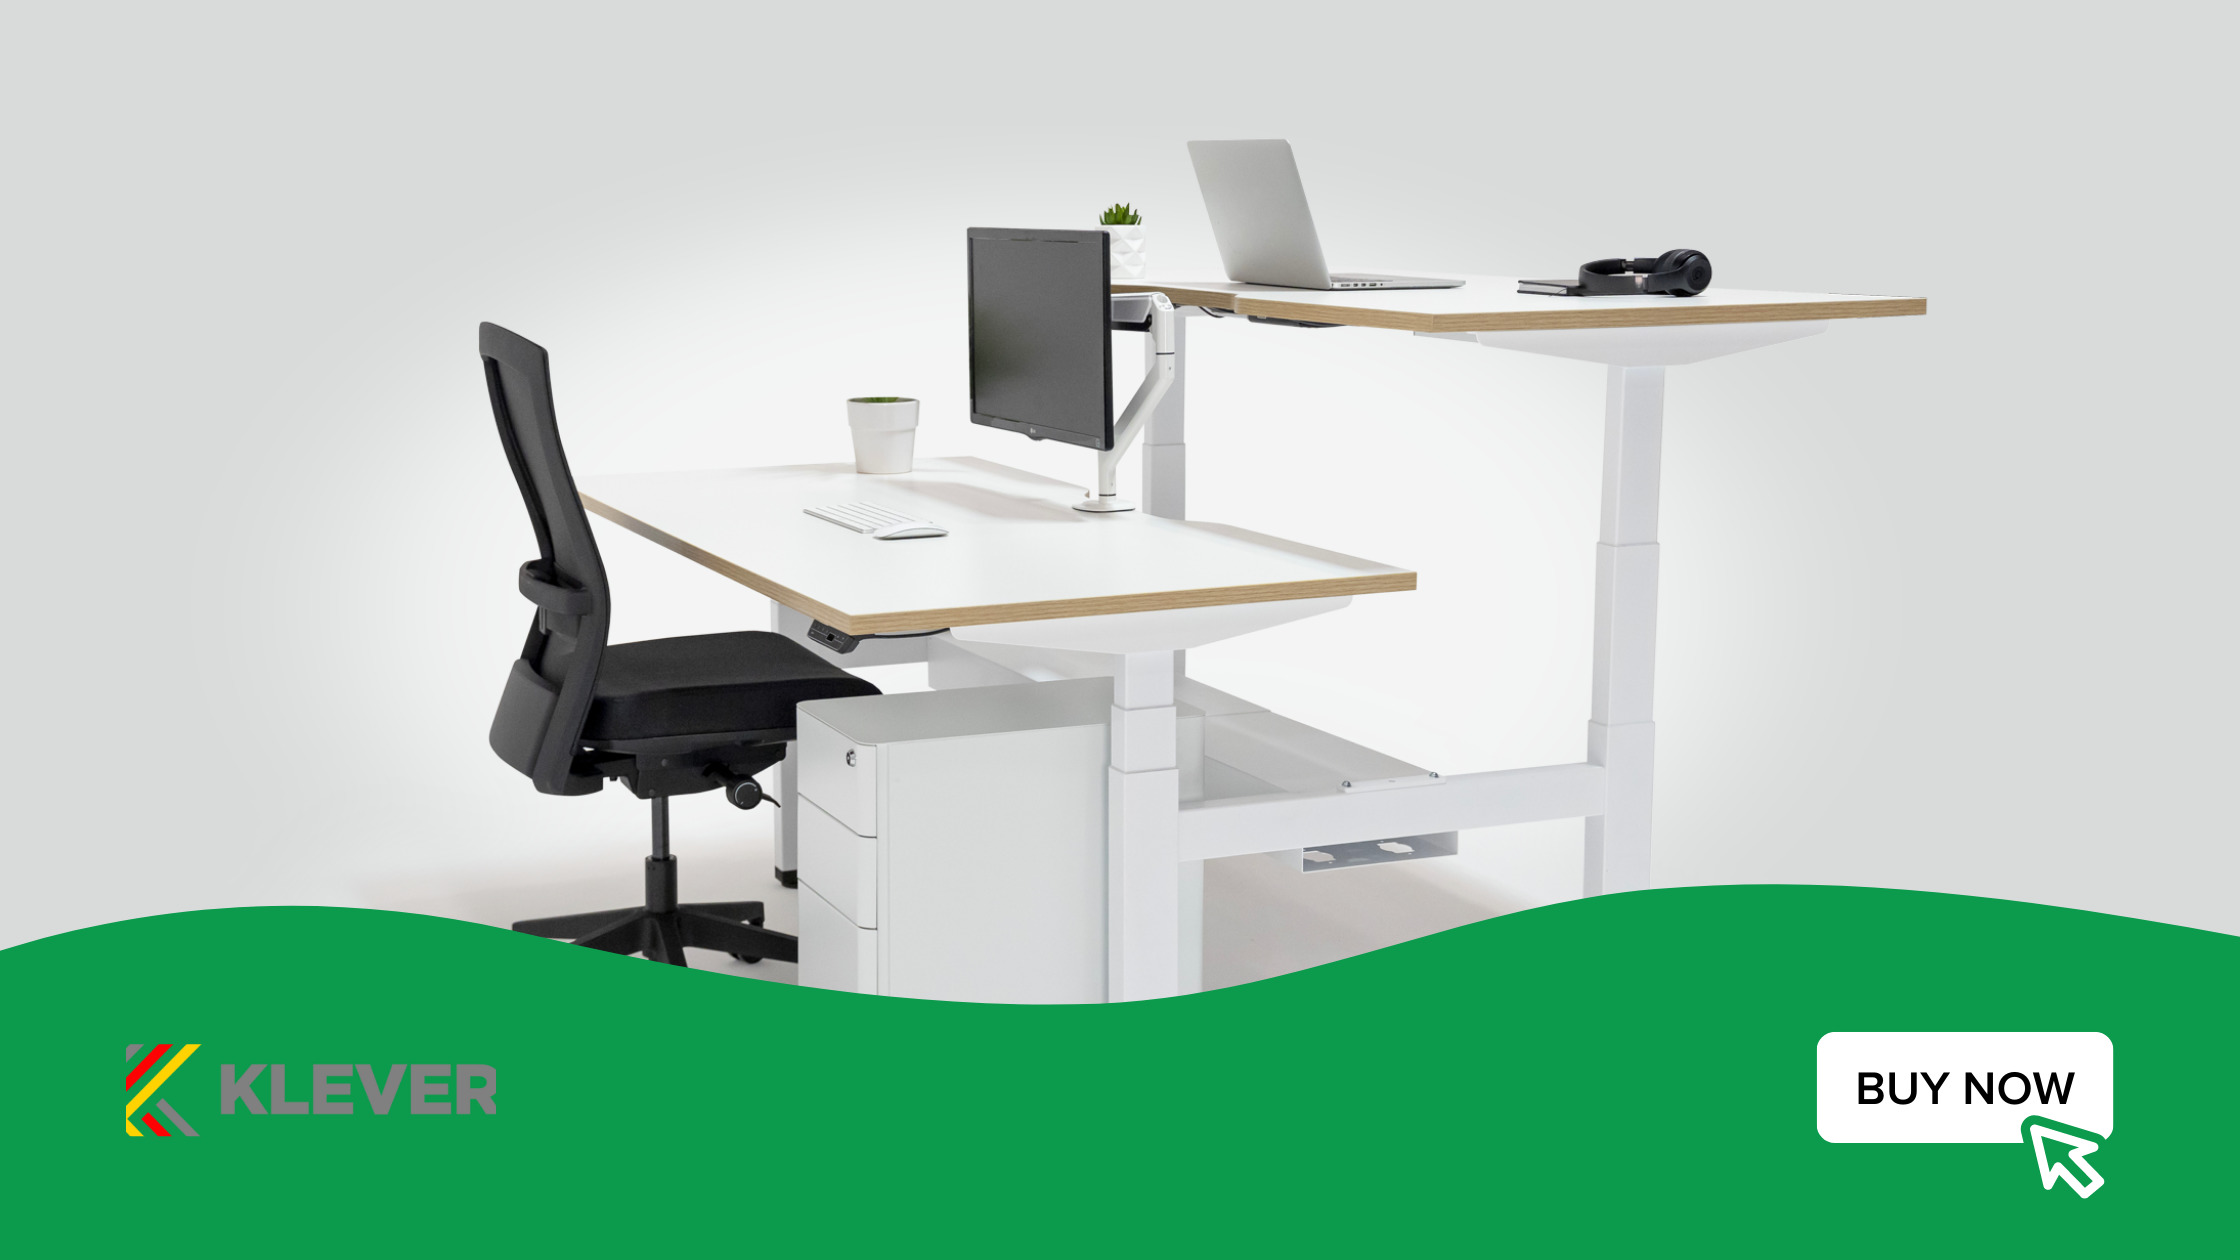 Adjustable desk for hybrid working